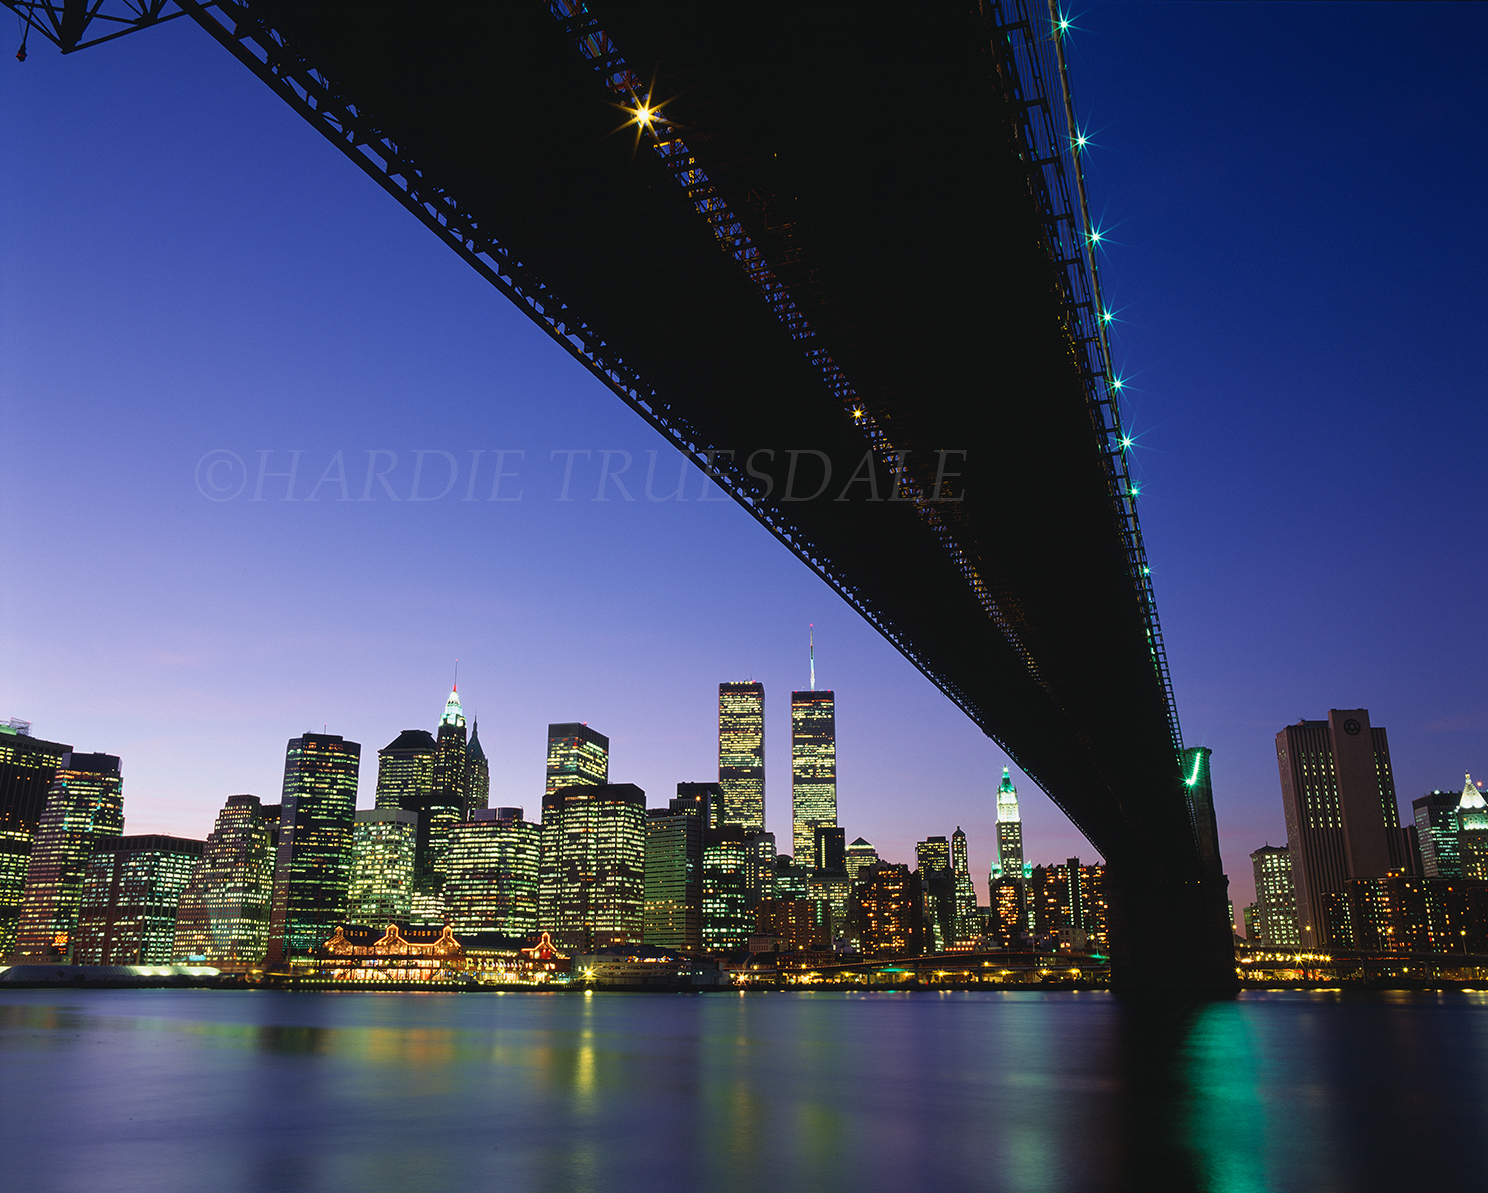 NYC#42 "Brooklyn Bridge at Night", NYC